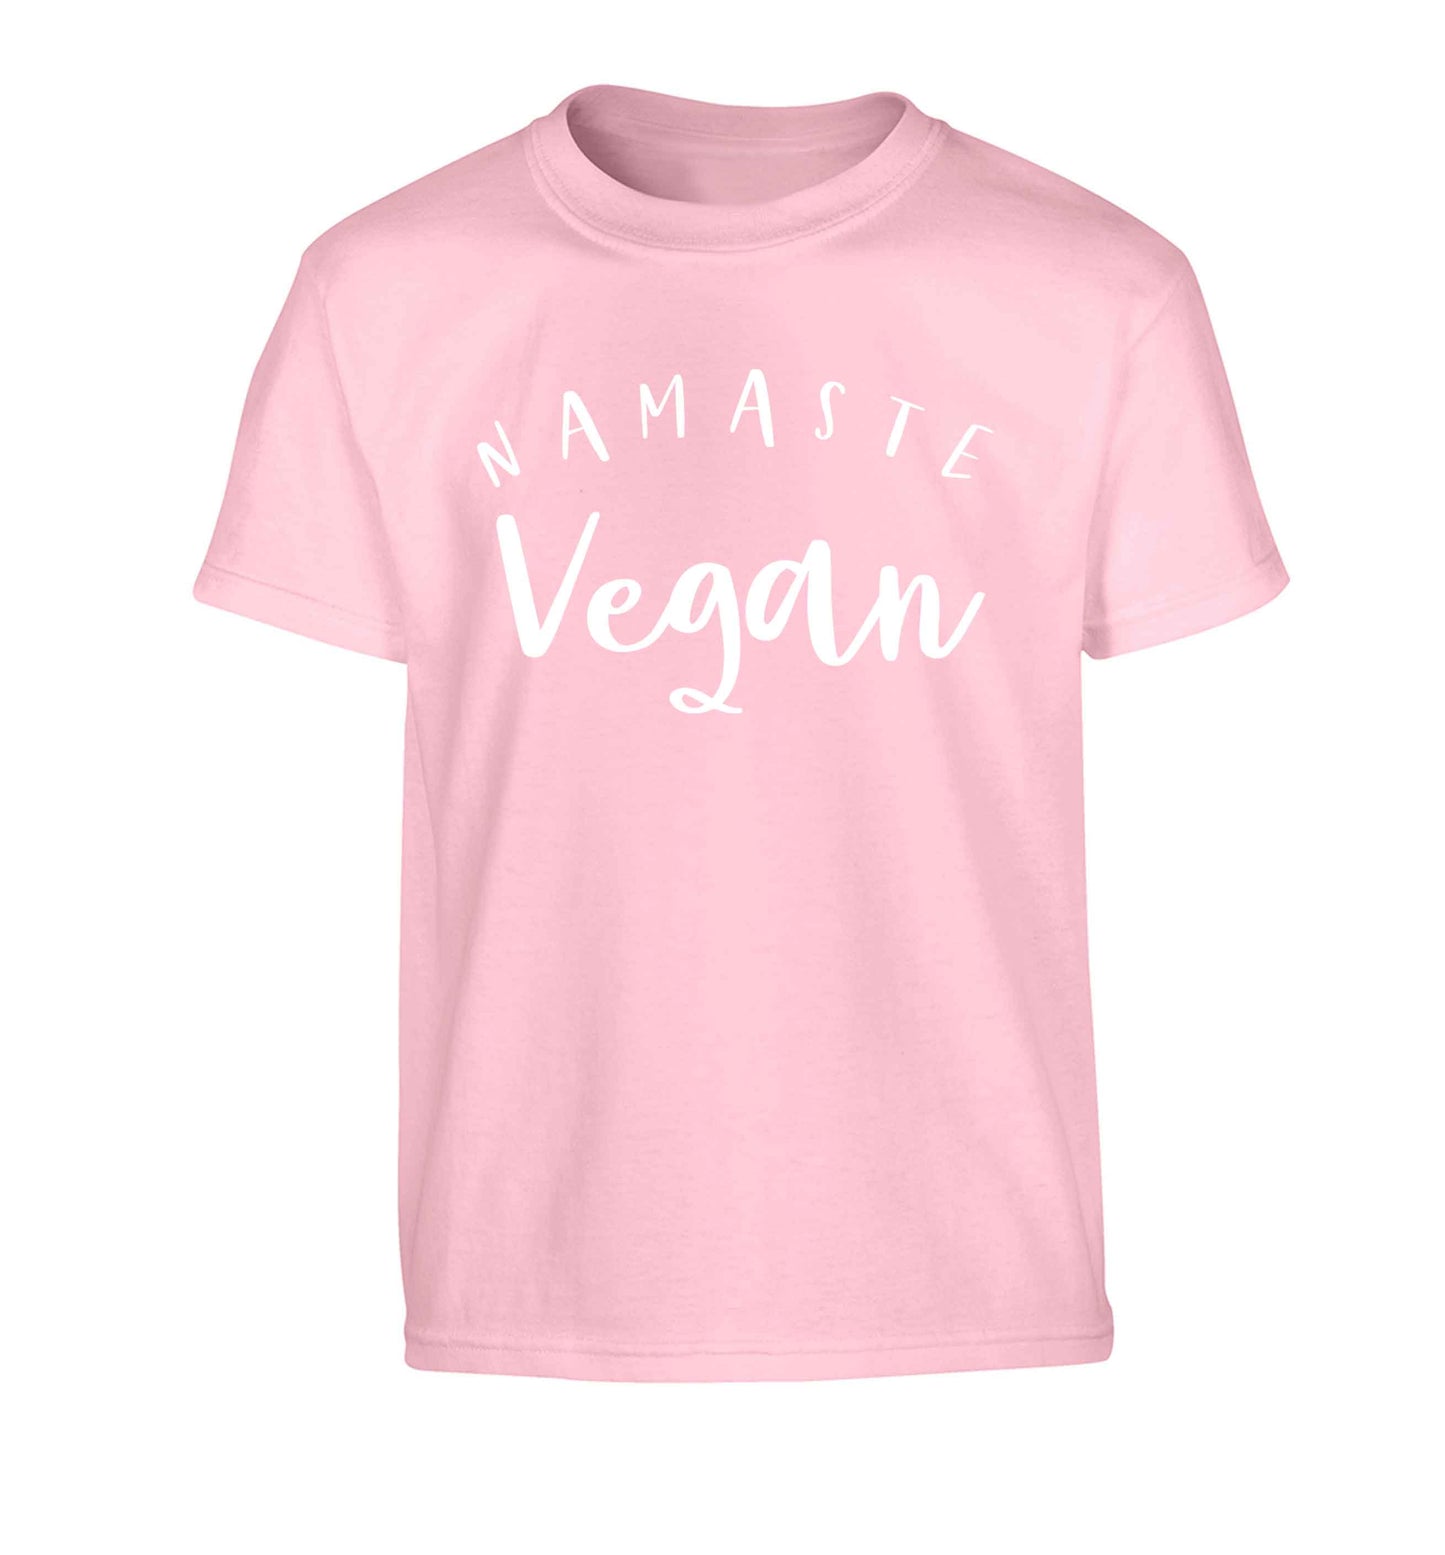 Namaste vegan Children's light pink Tshirt 12-13 Years